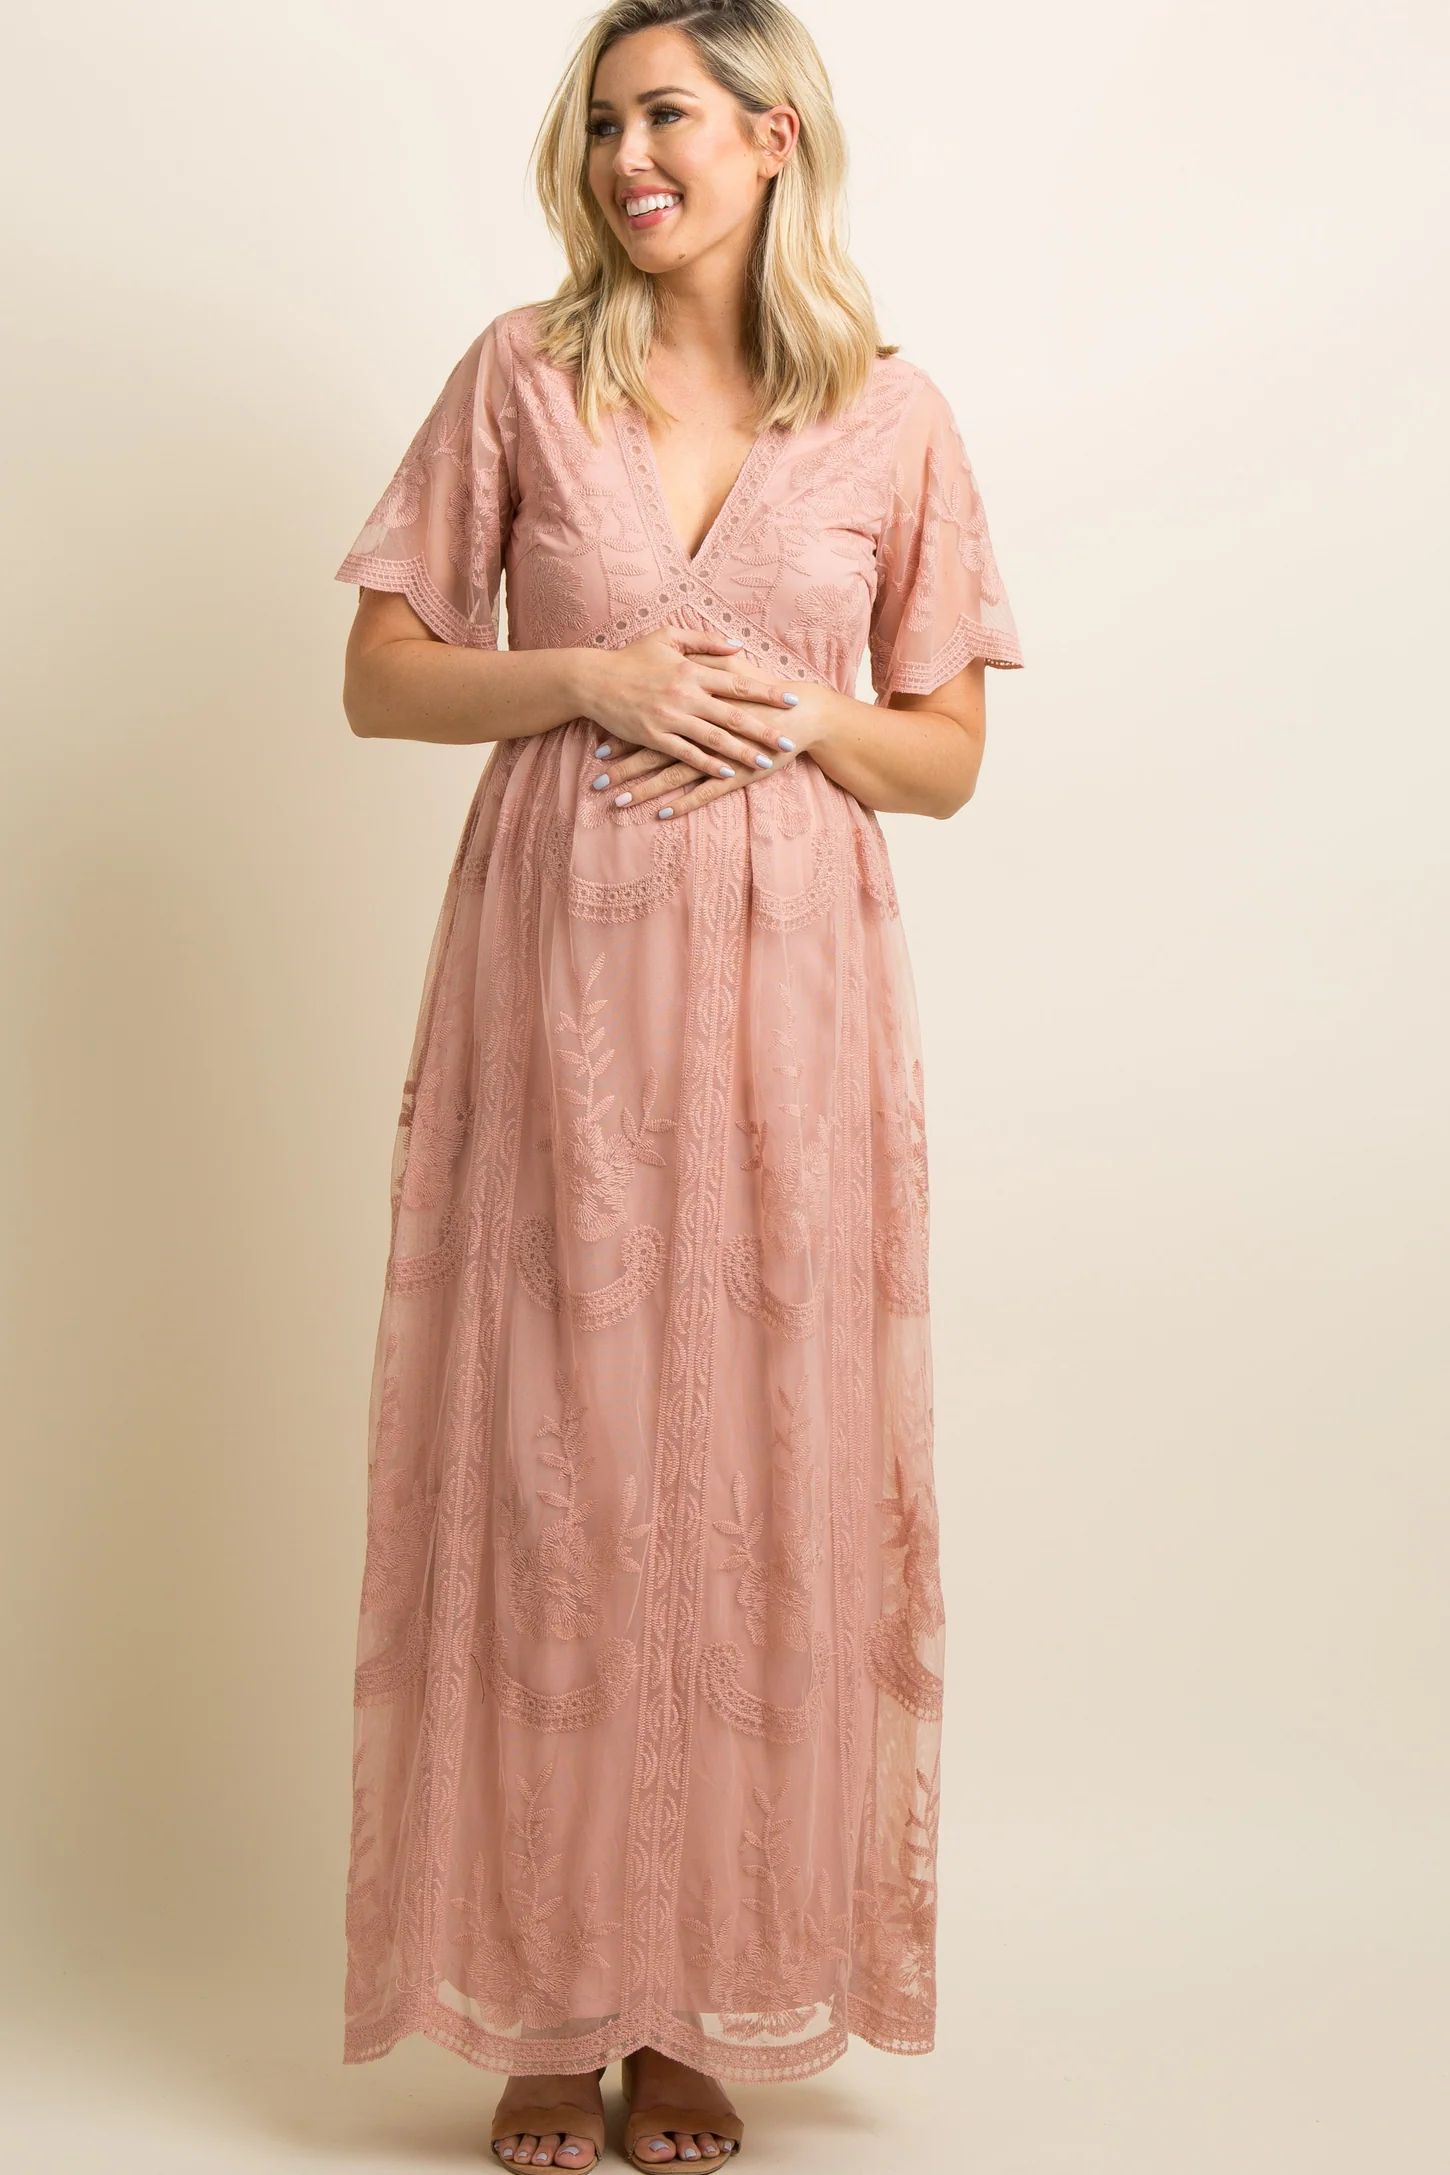 PinkBlush White Lace Mesh Overlay Maternity Maxi Dress | PinkBlush Maternity